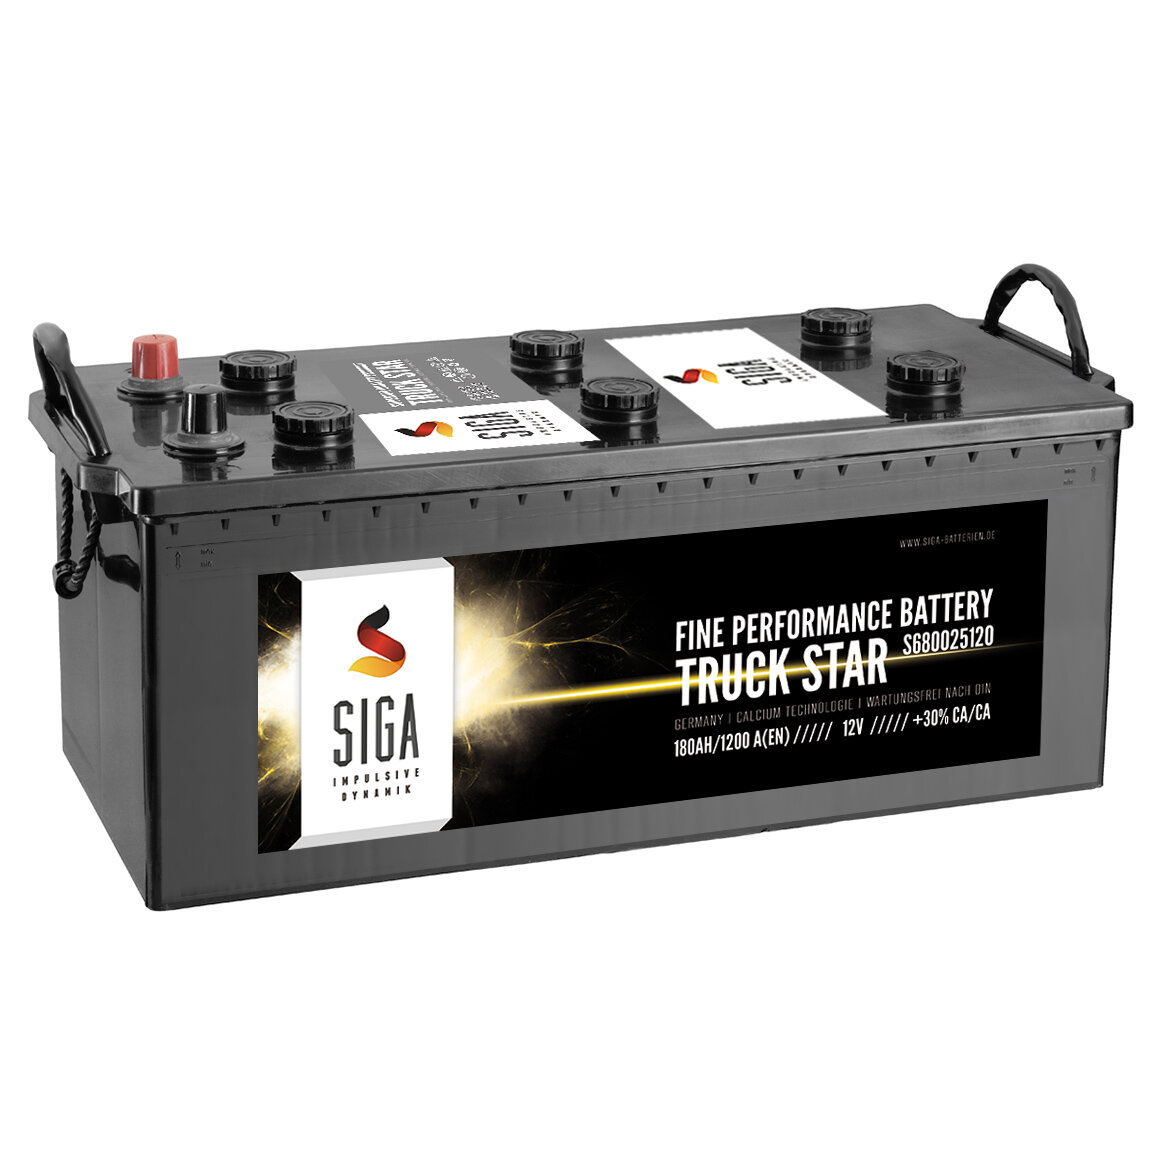 SIGA TRUCK STAR LKW Batterie 230Ah 12V, 294,07 €